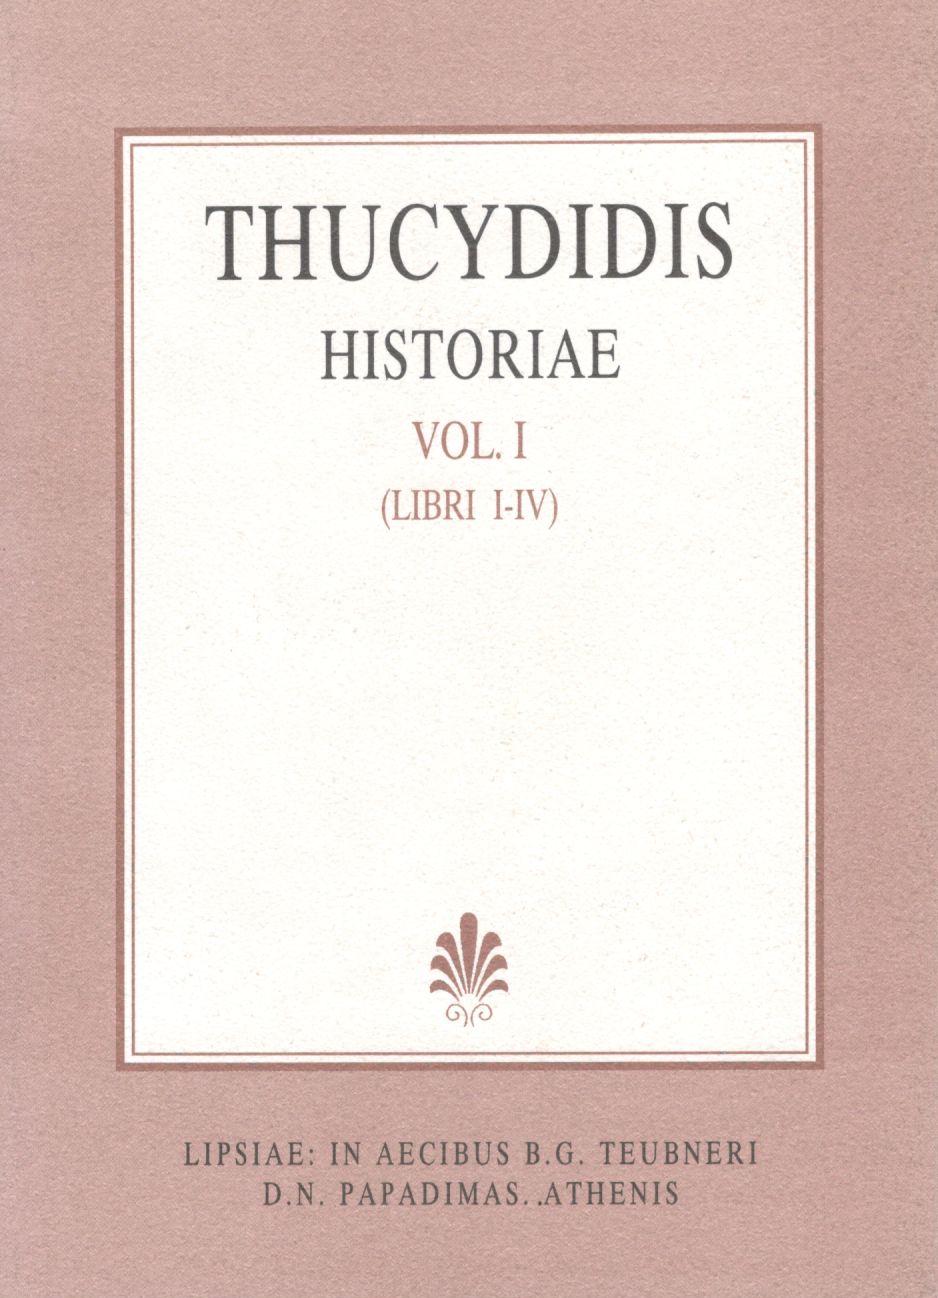 THUCYDIDIS, HISTORIAE, VOL. I, LIBRI I-IV (ΘΟΥΚΥΔΙΔΟΥ, ΙΣΤΟΡΙΑΙ, Τ. Α